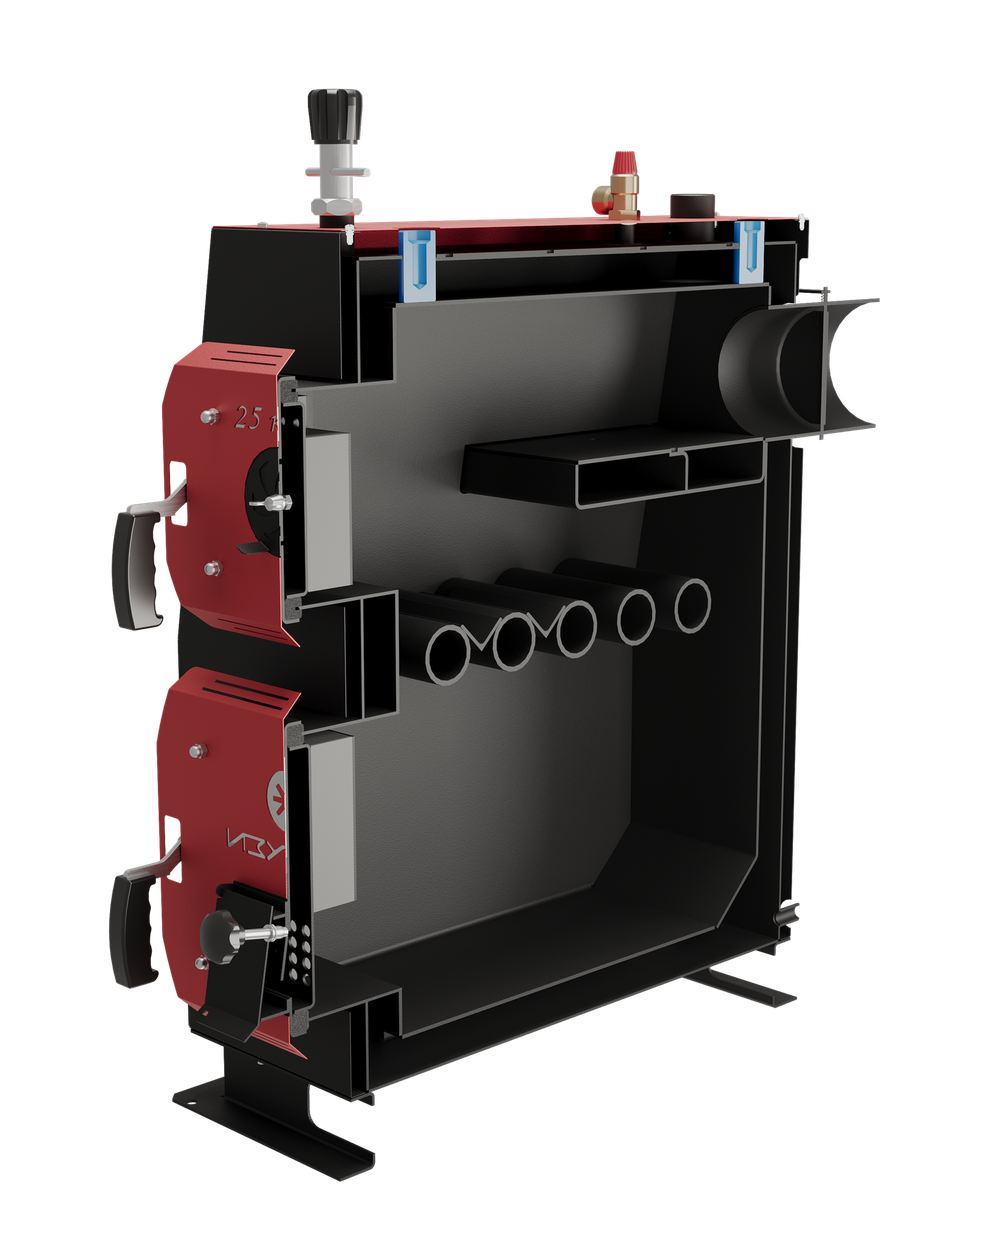 Твердотопливный котел длительного горения Изуран-50 в кожухе на 50 кВт. Отапливаемое помещение до 1350 куб.м. В разрезе. Производитель - Изуран